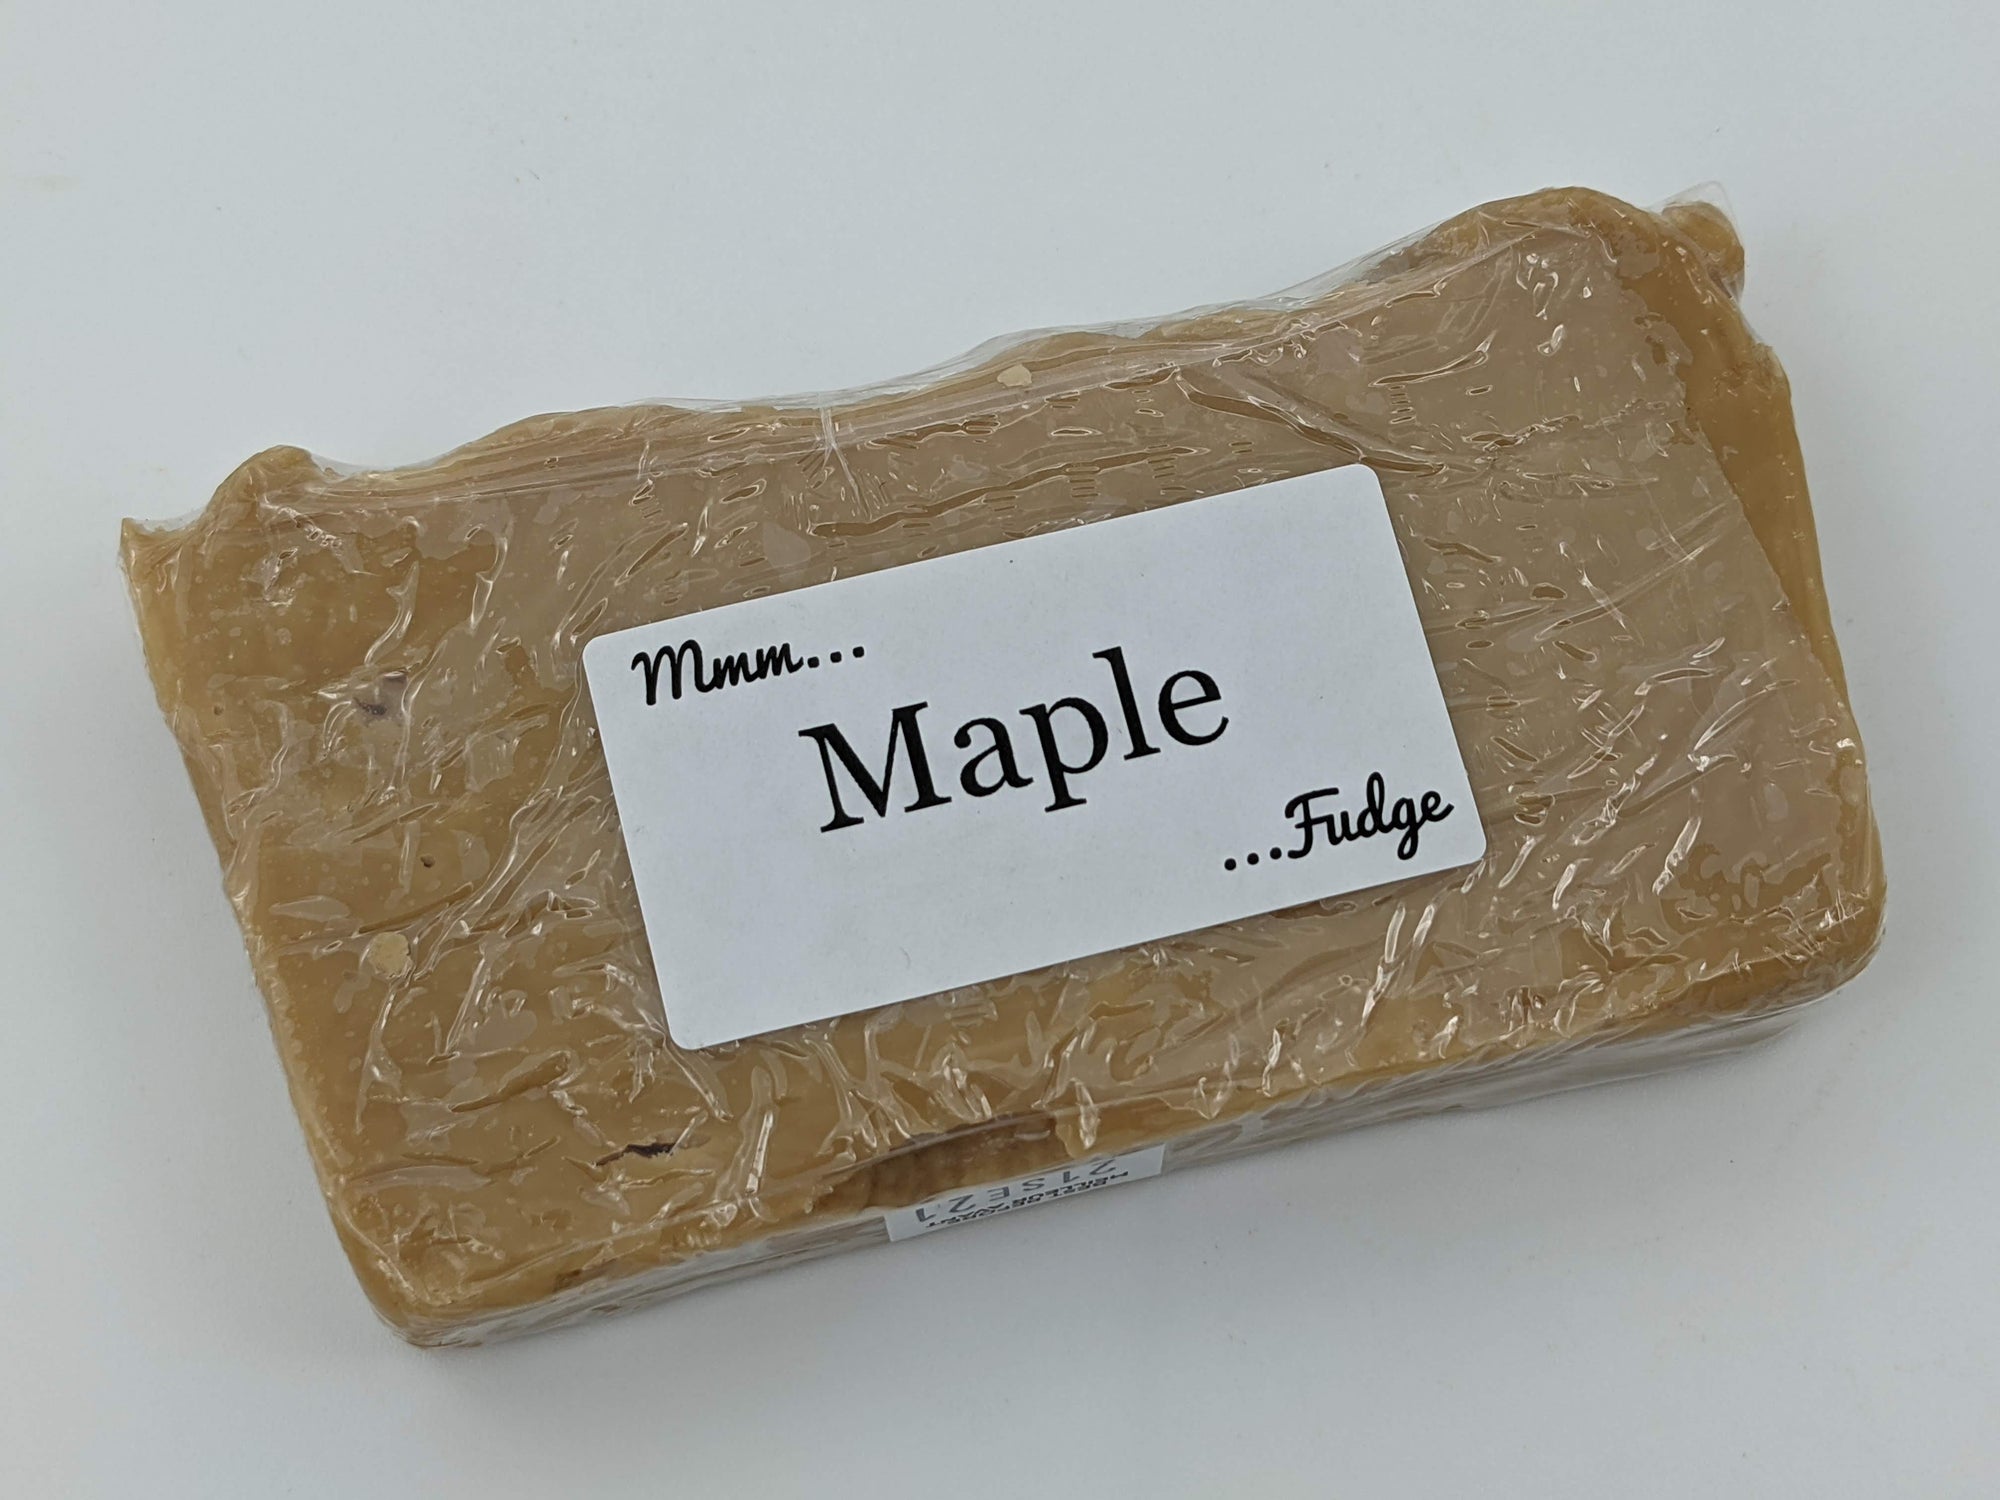 Fudge: Maple